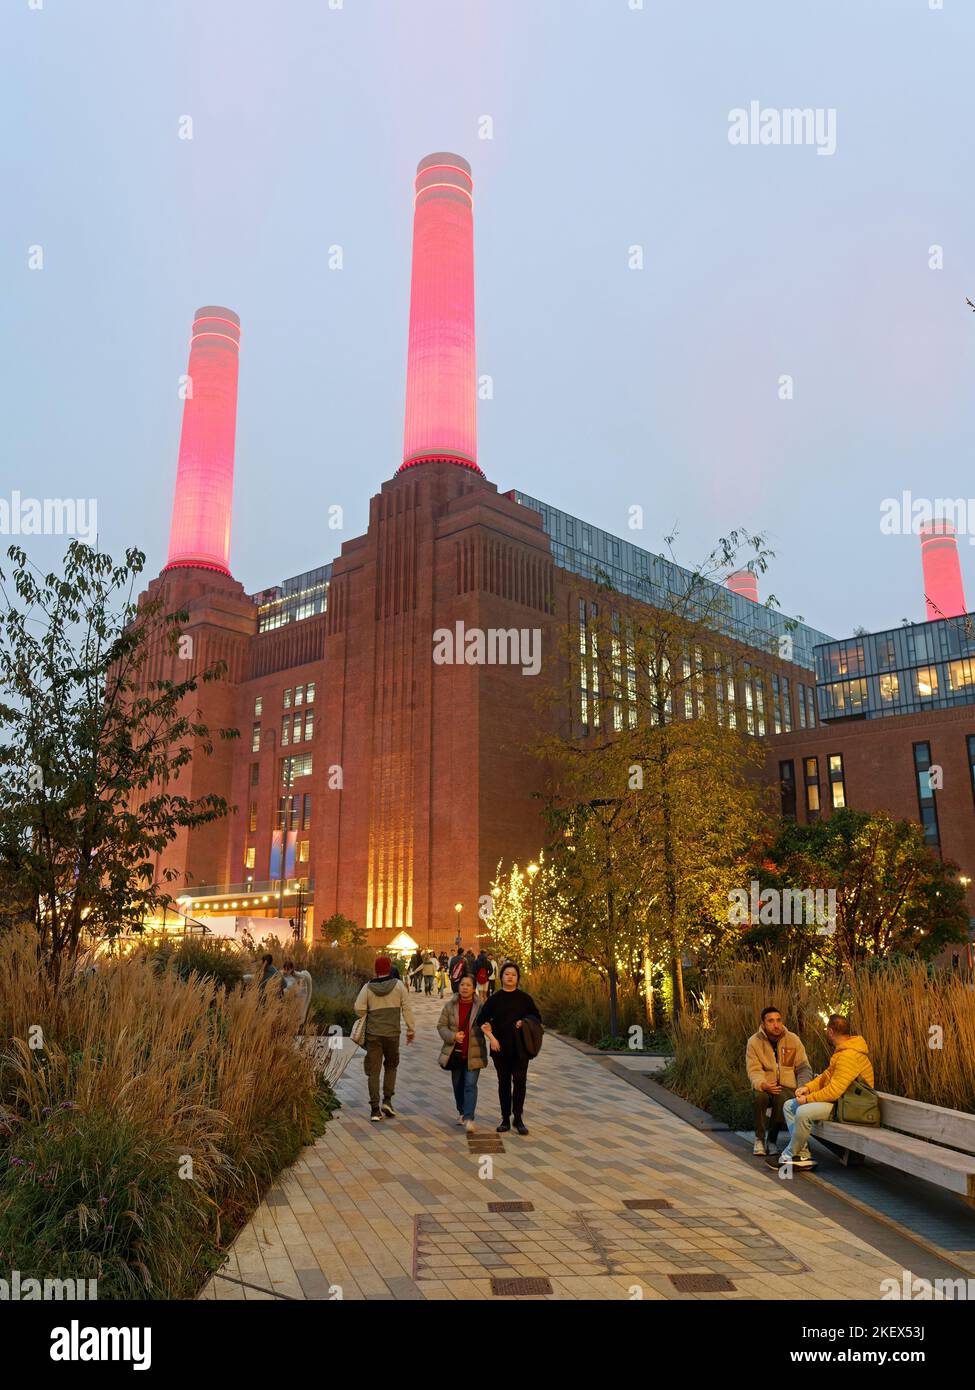 Vue sur un chemin menant à la station électrique Battersea de Londres illuminé au crépuscule avec des cheminées rouges brillantes perçant le ciel Banque D'Images